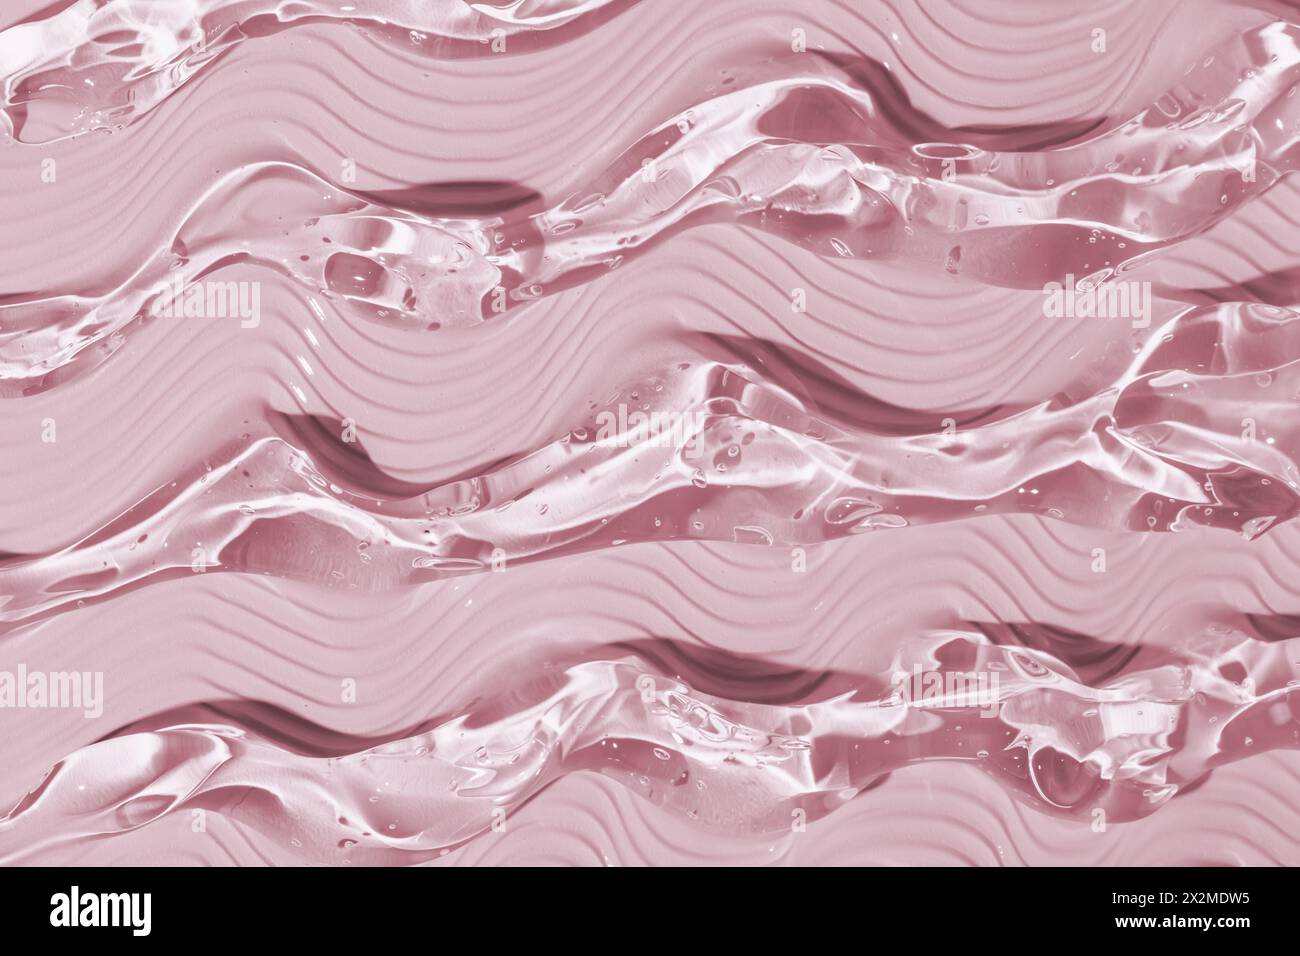 Dieses Bild zeigt eine Nahaufnahme glatter, welliger pinkfarbener Geltexturen, die eine beruhigende und fließende Ästhetik verleihen Stockfoto